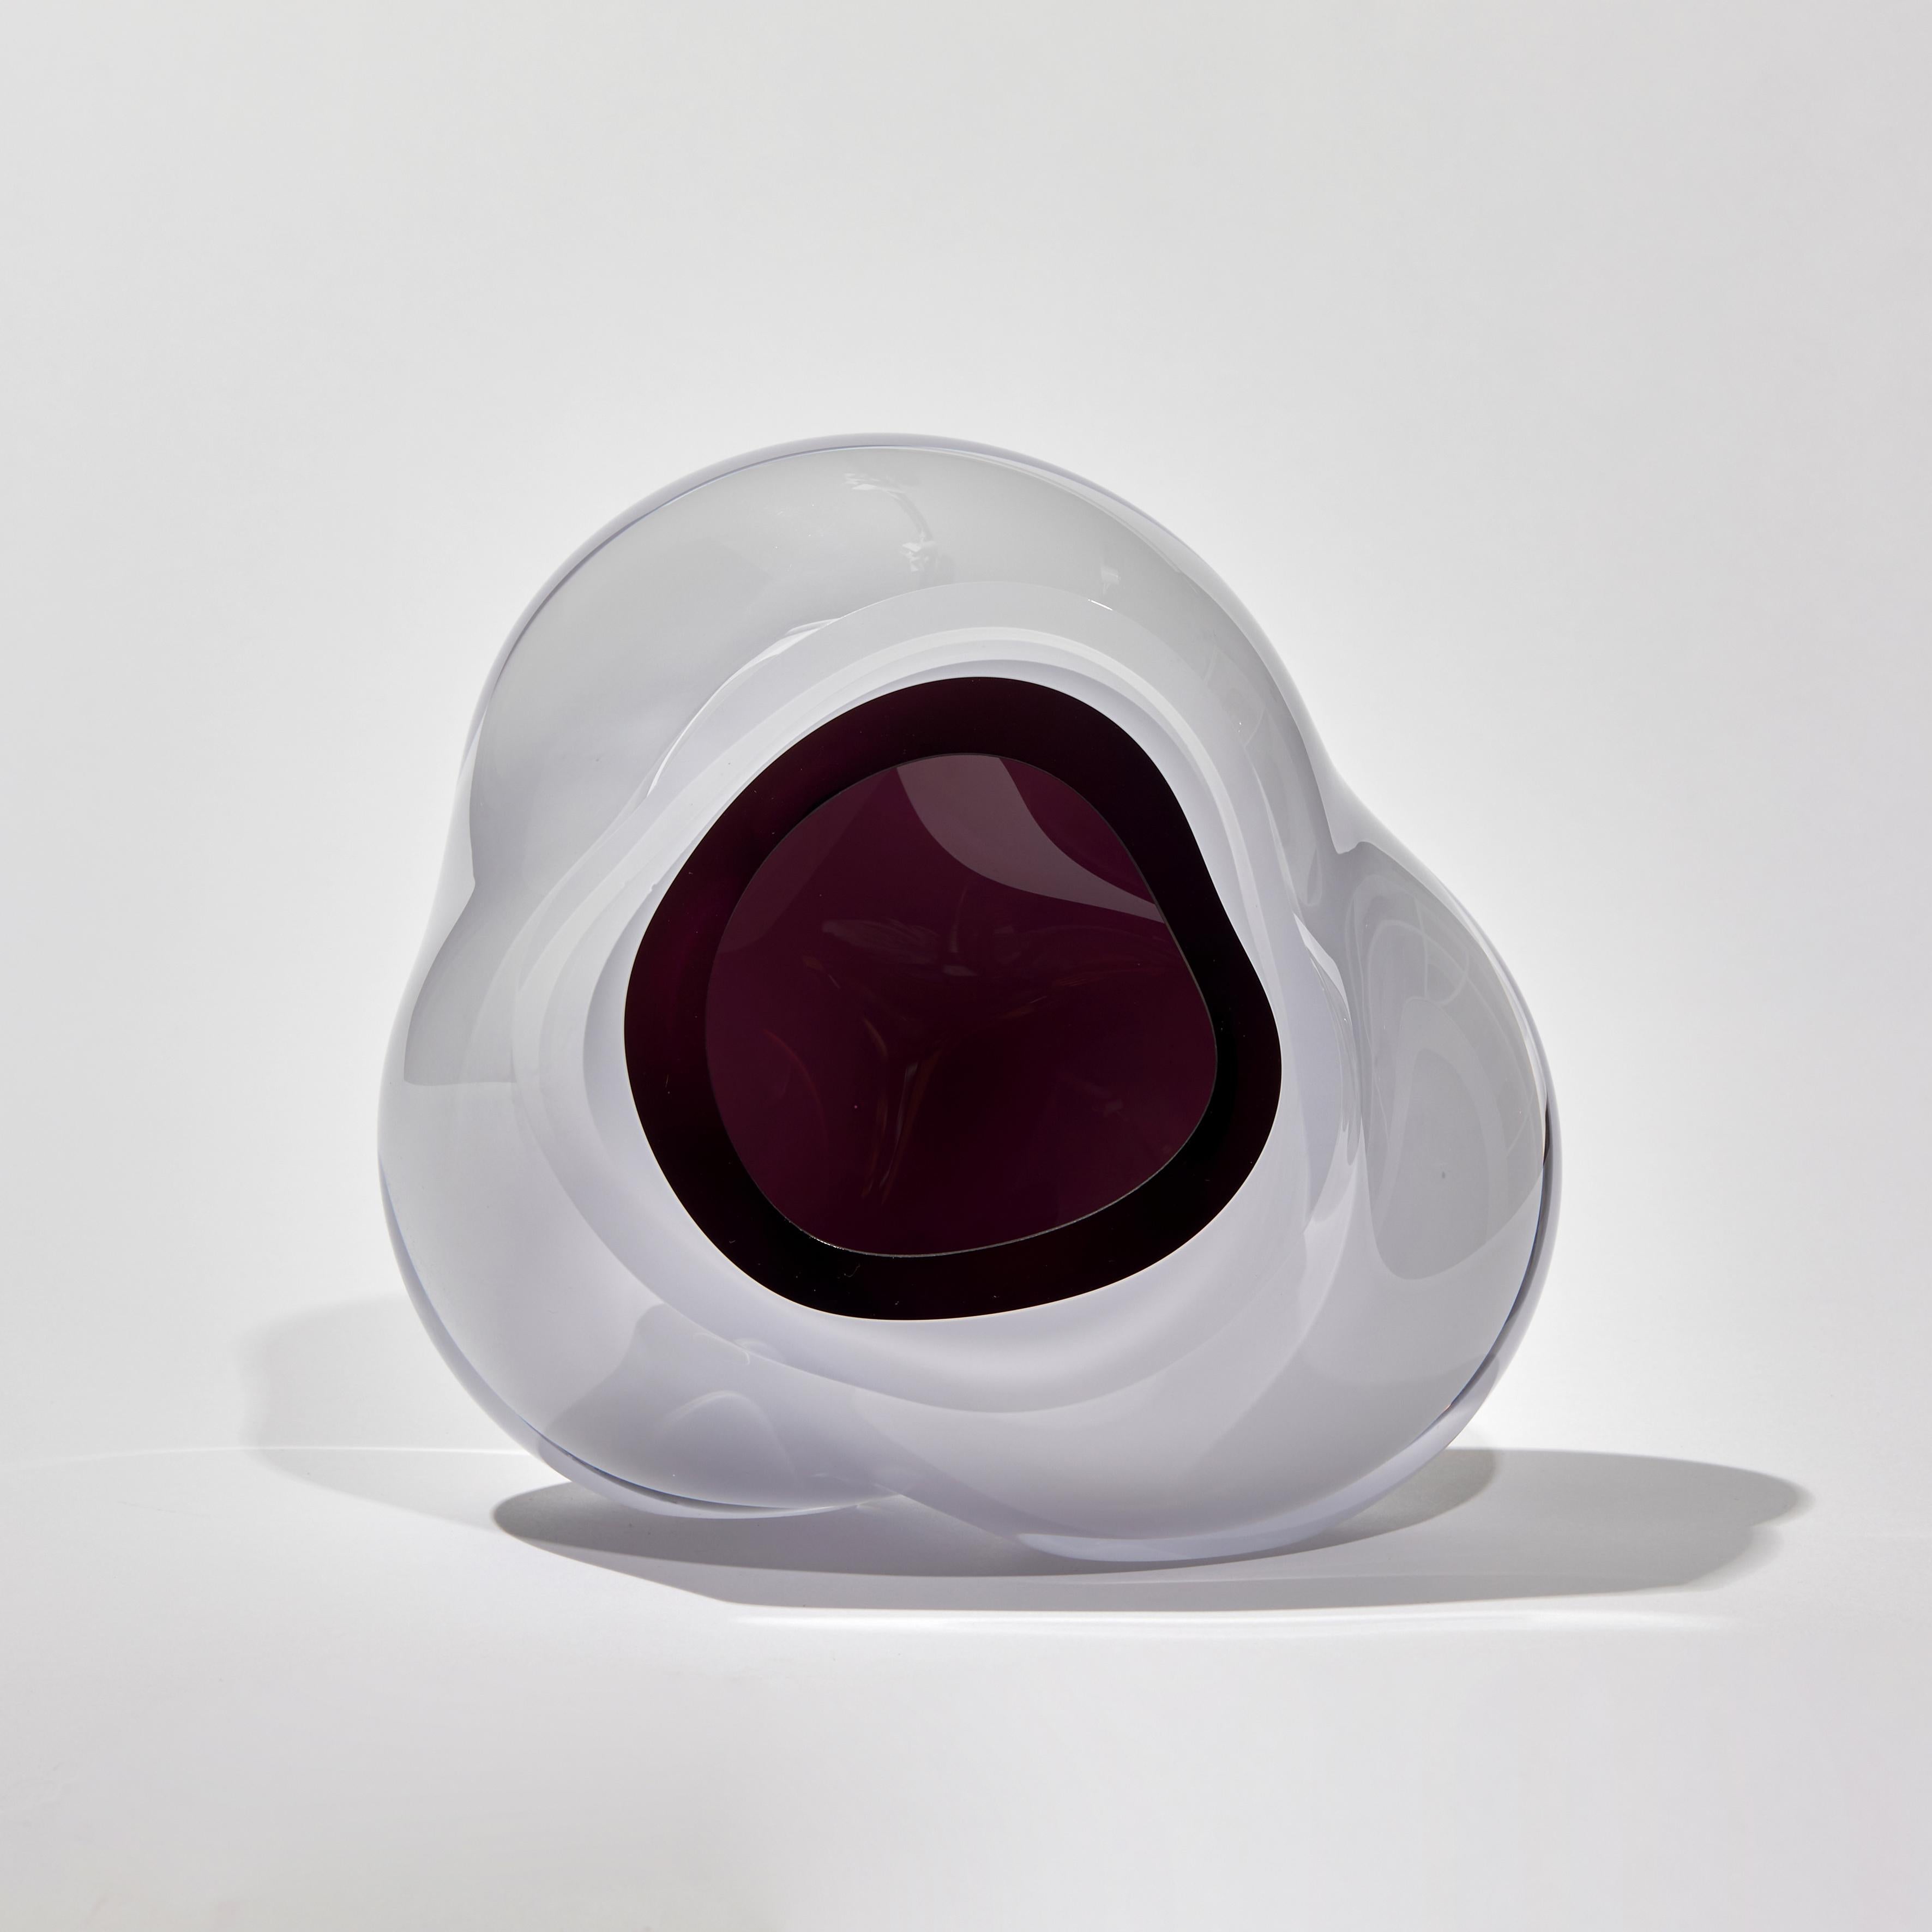 Ice Vug in Aubergine ist eine einzigartige mundgeblasene Skulptur der britischen Künstlerin Samantha Donaldson. Eine bezaubernde, ätherische Skulptur mit einem gletscherweißen Äußeren und einem reichhaltigen aubergine/violetten, höhlenartigen